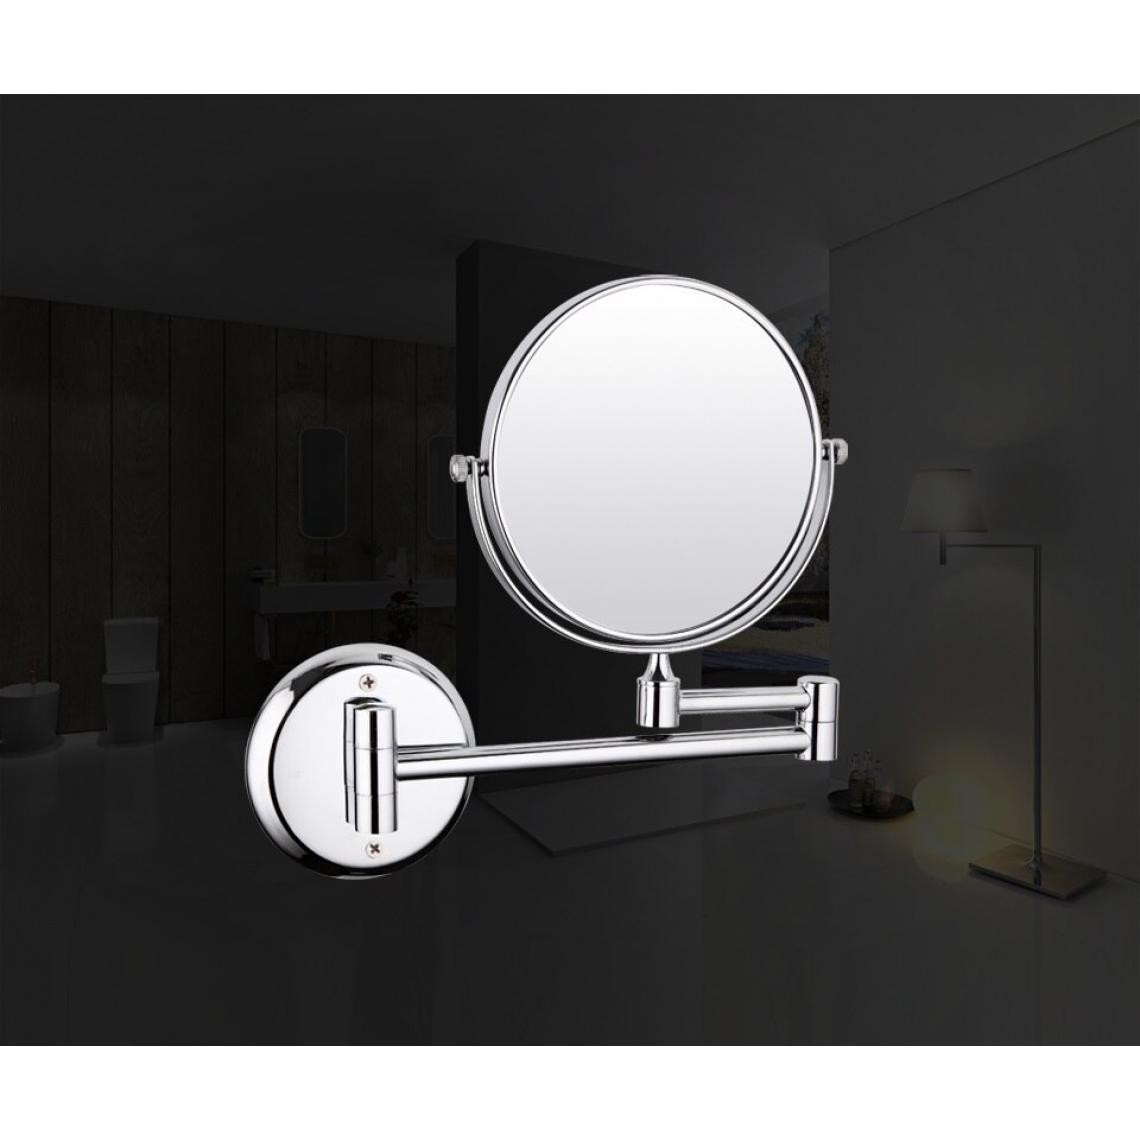 Universal - Nouveaux arrivants Accessoires de salle de bains chromés Miroir Distance réglable | Miroir de salle de bains(Argent) - Miroir de salle de bain